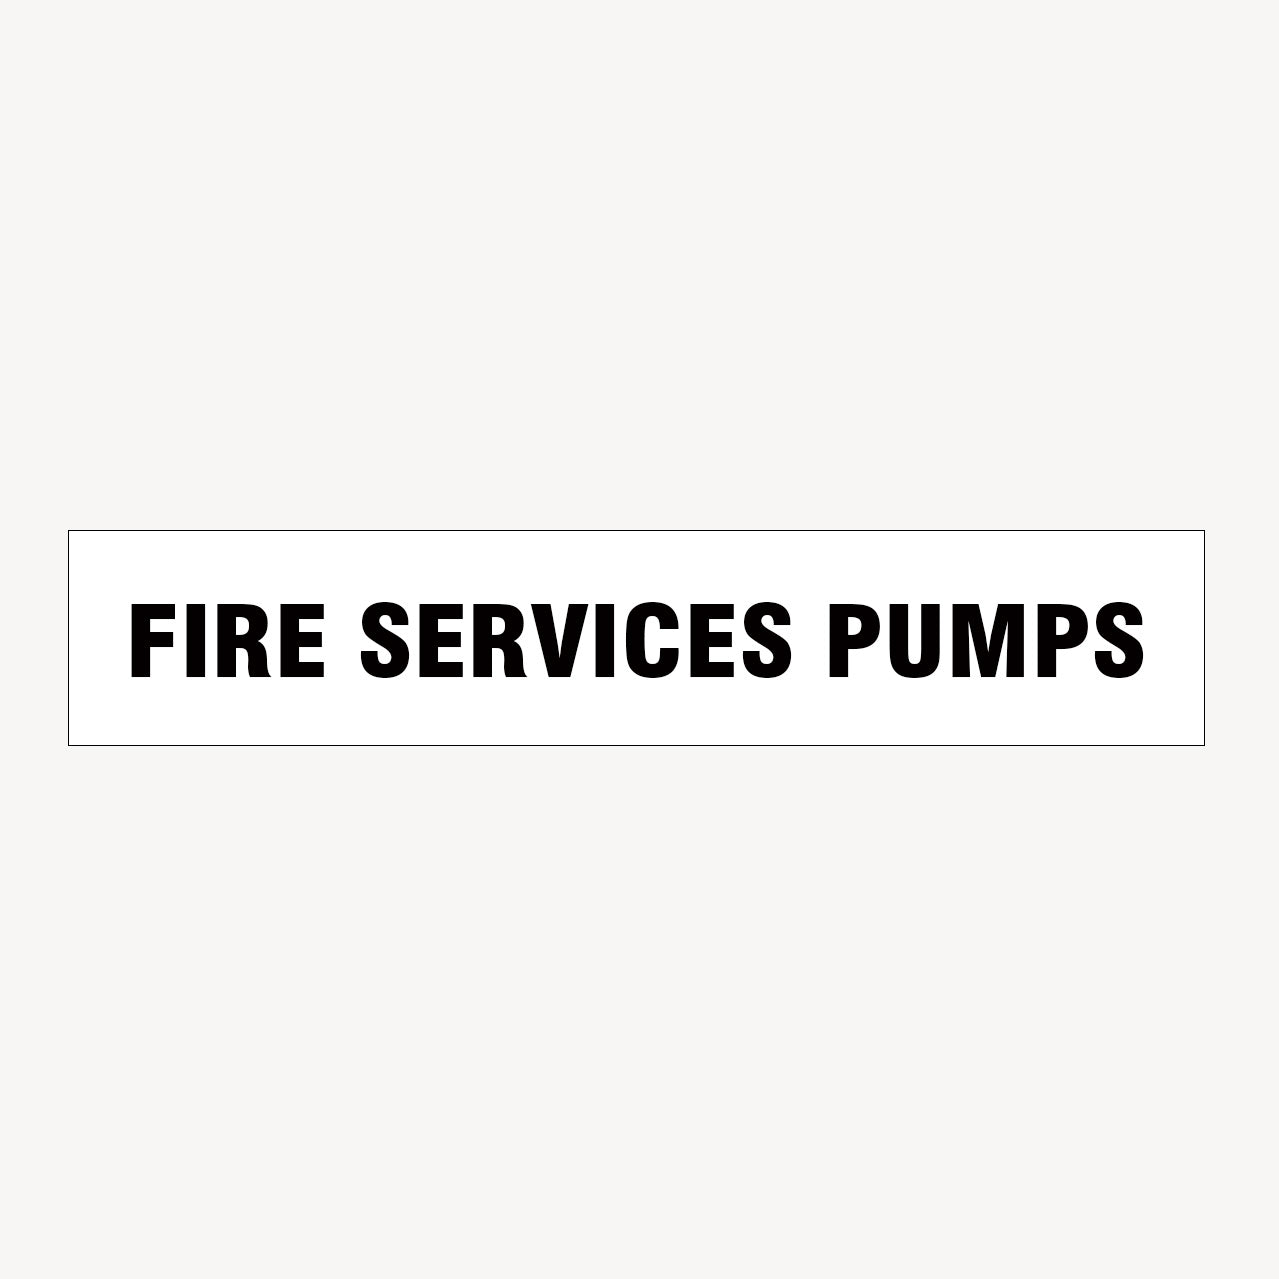 FIRE SERVICES PUMPS SIGN